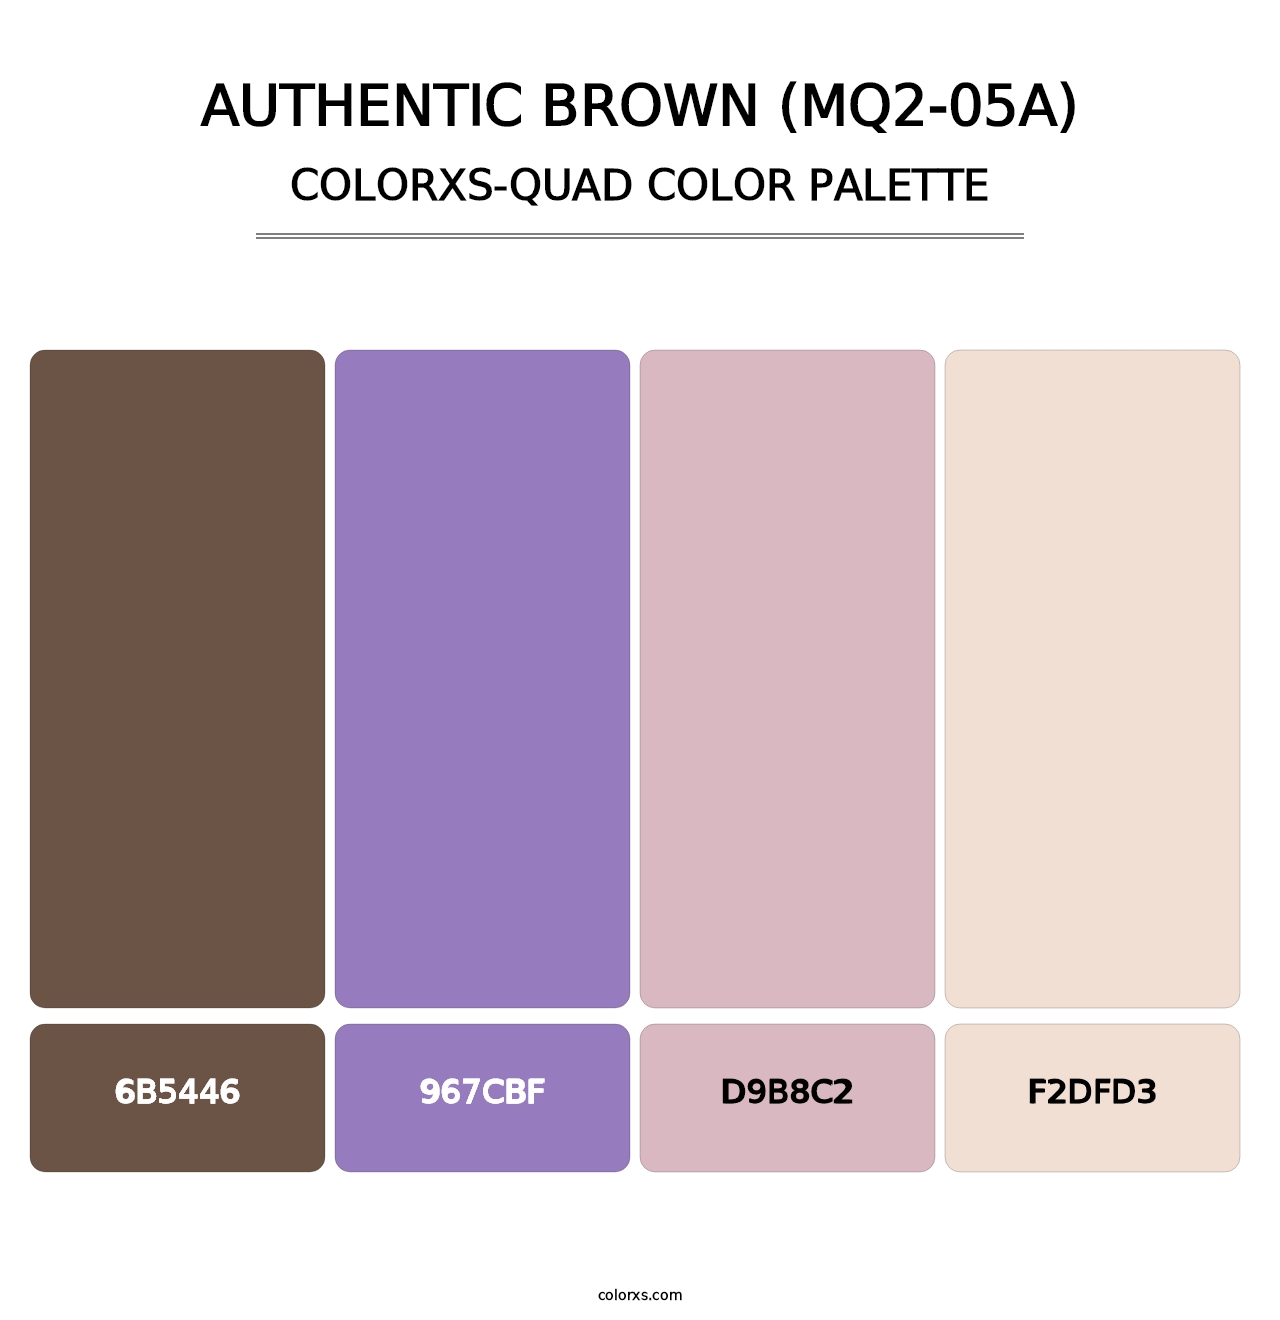 Authentic Brown (MQ2-05A) - Colorxs Quad Palette